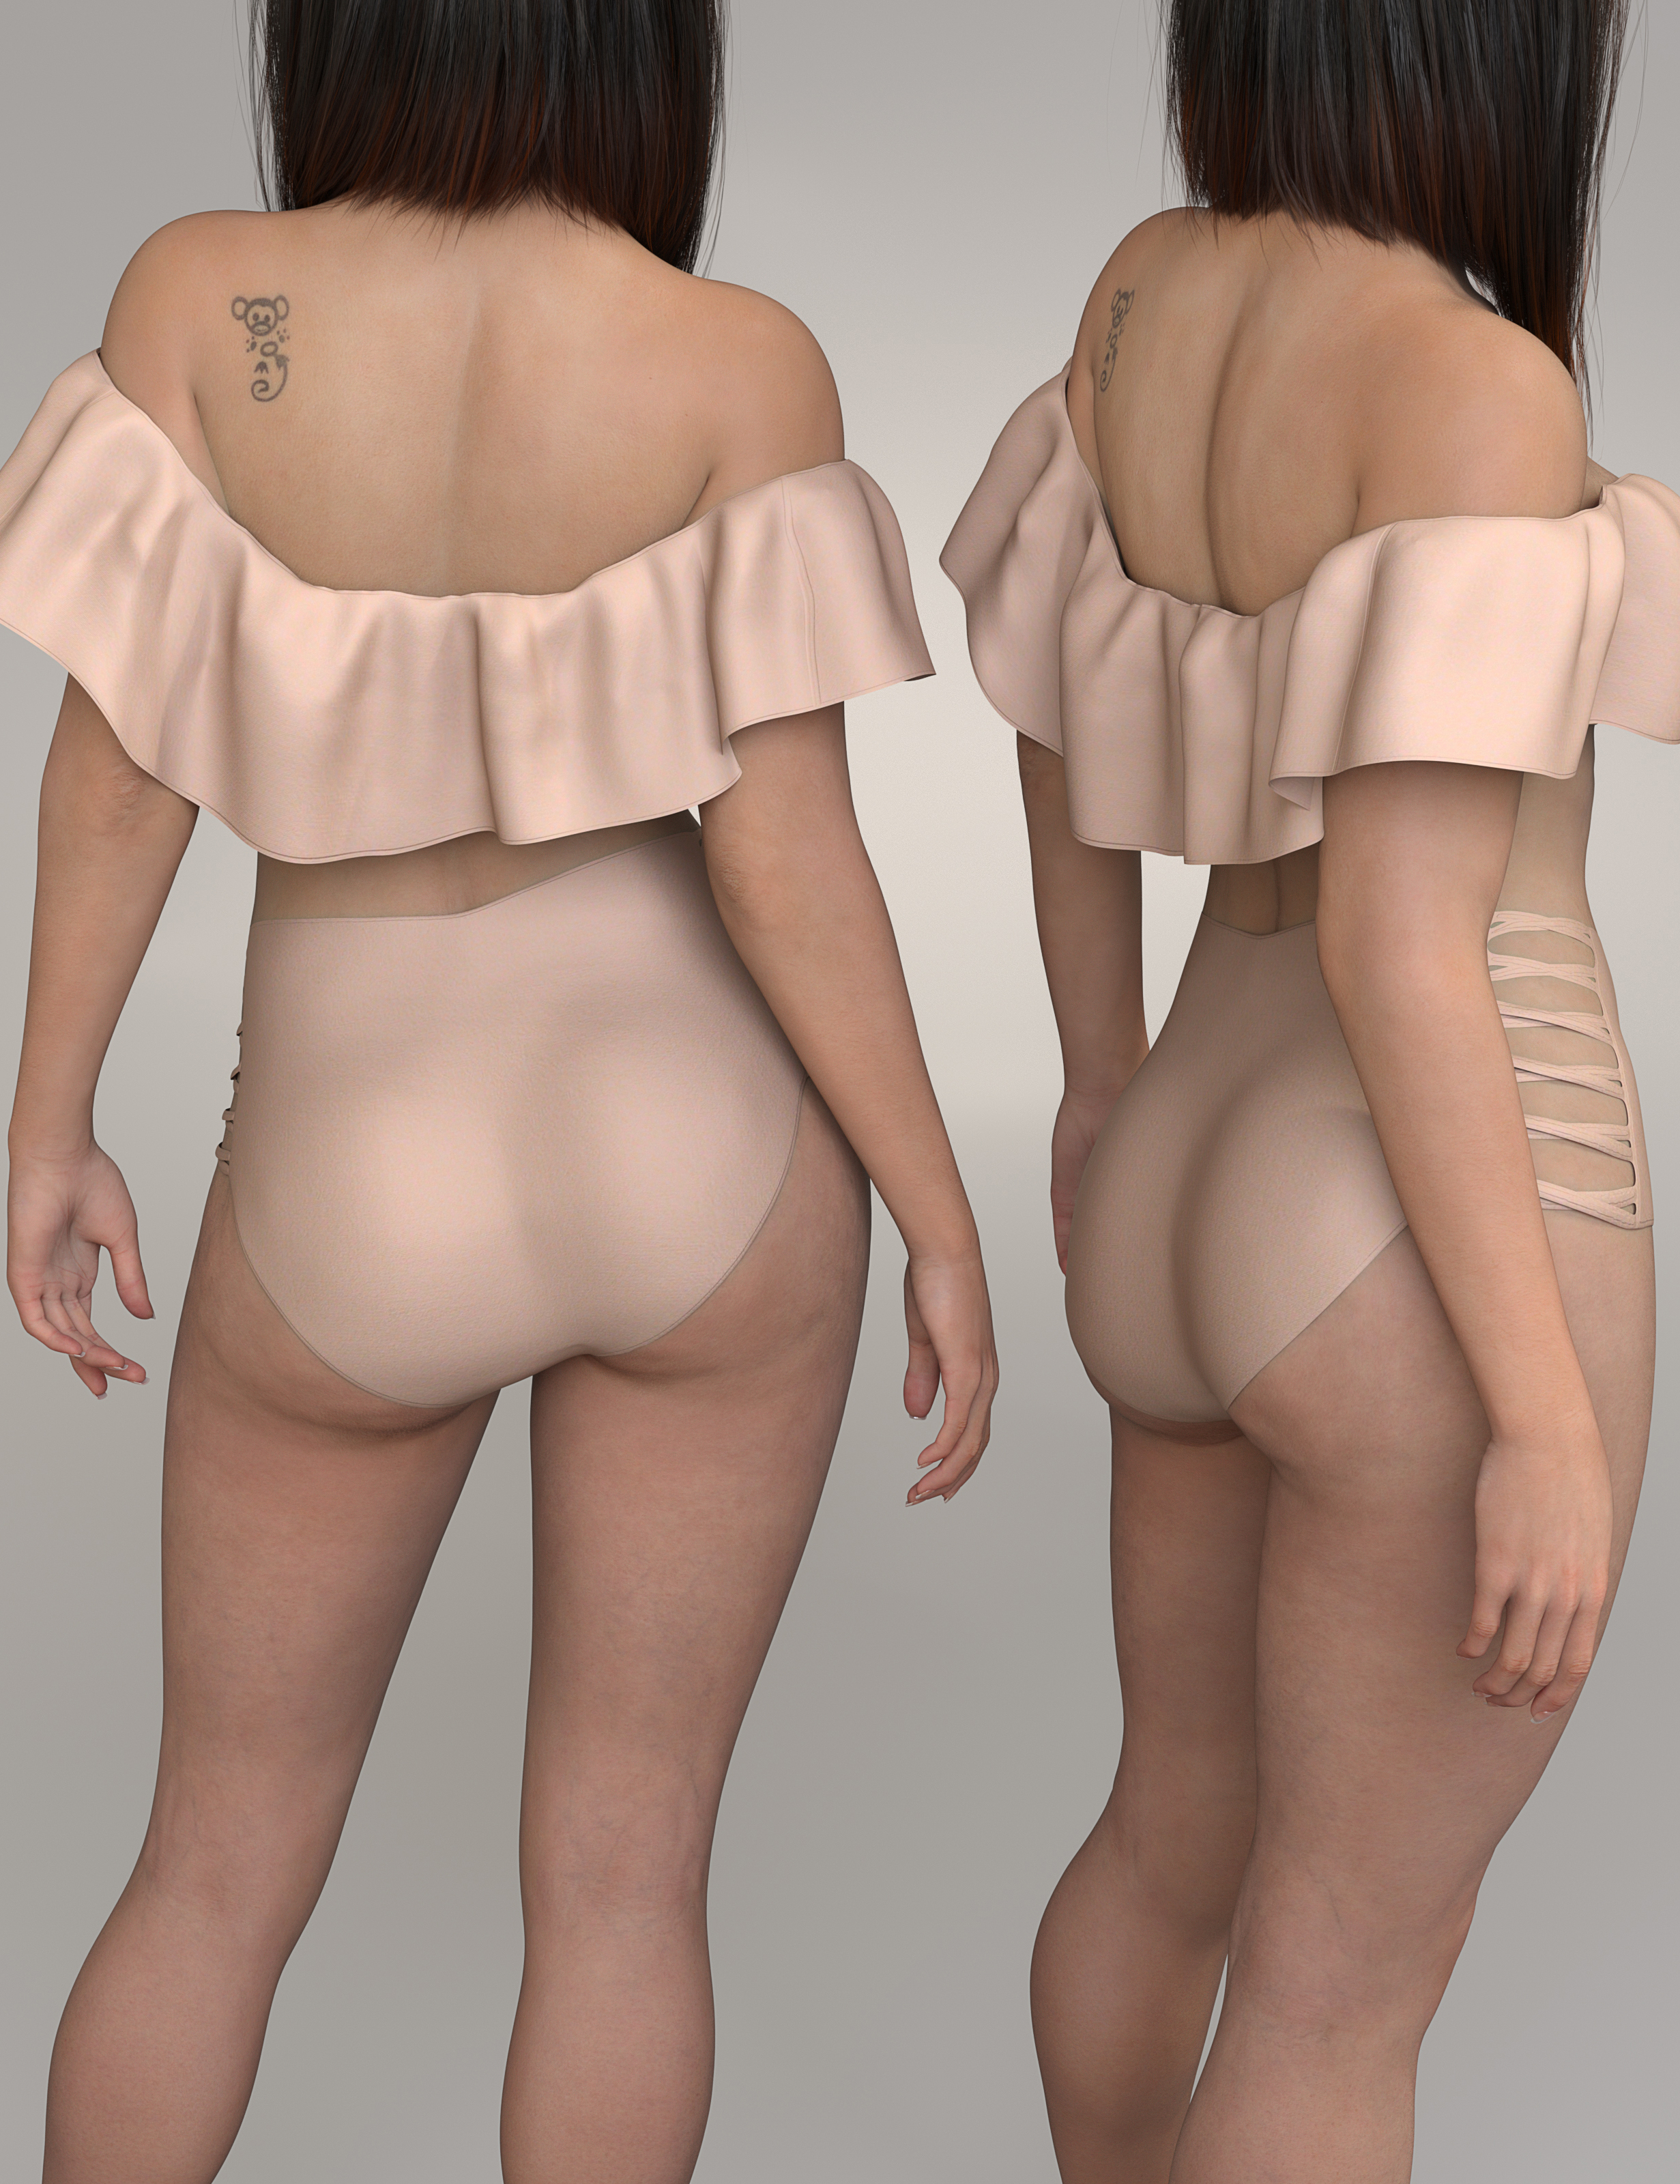 Septima HD for Genesis 8.1 Female by: MorrisEmrys, 3D Models by Daz 3D